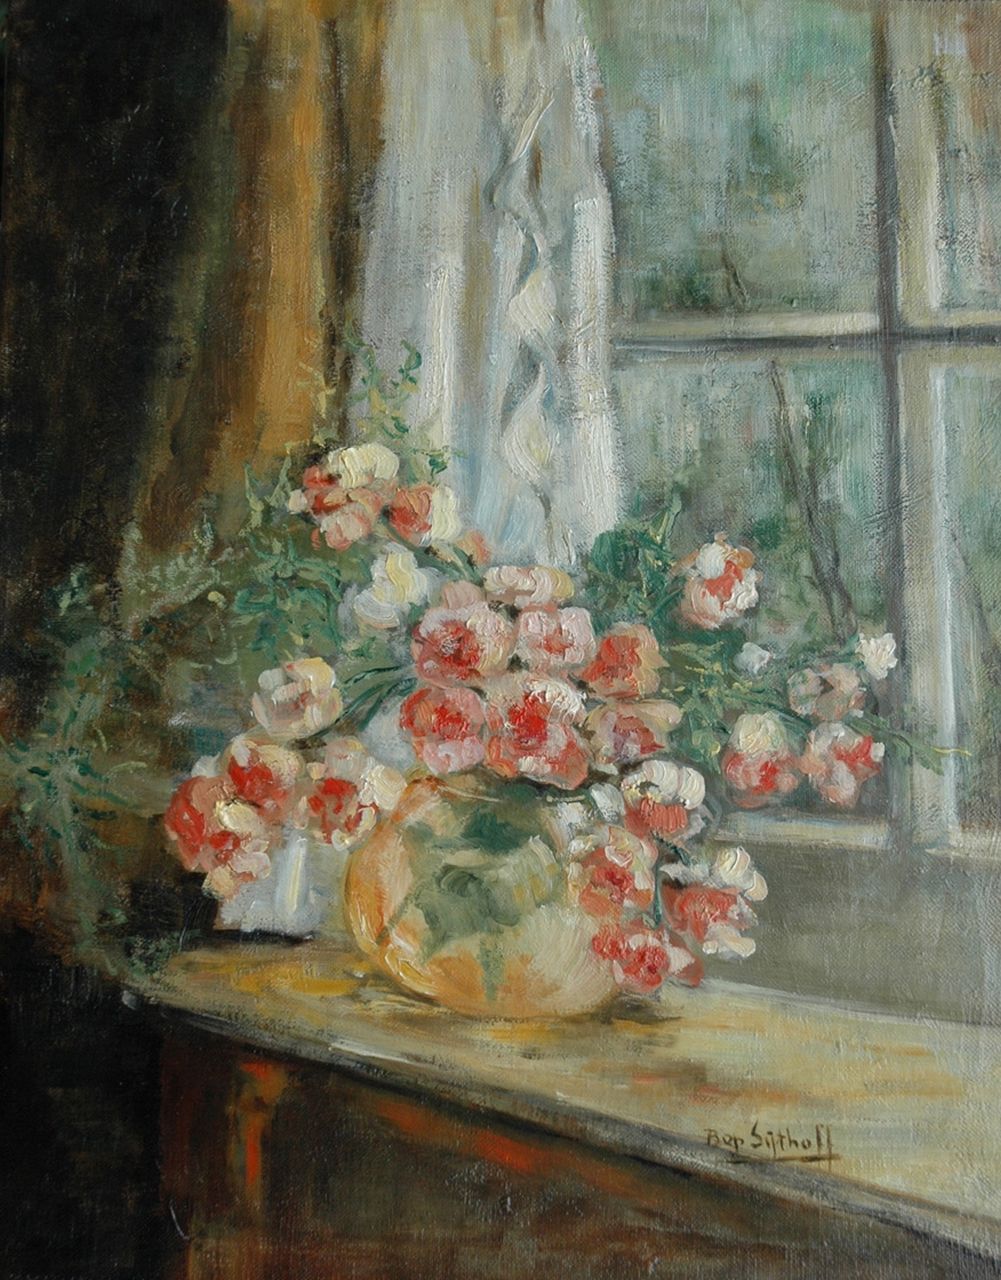 Sijthoff A.J.  | Alberta Johanna 'Bep' Sijthoff, Summerflowers on the windowsill, oil on canvas 45.5 x 35.5 cm, signed l.r.